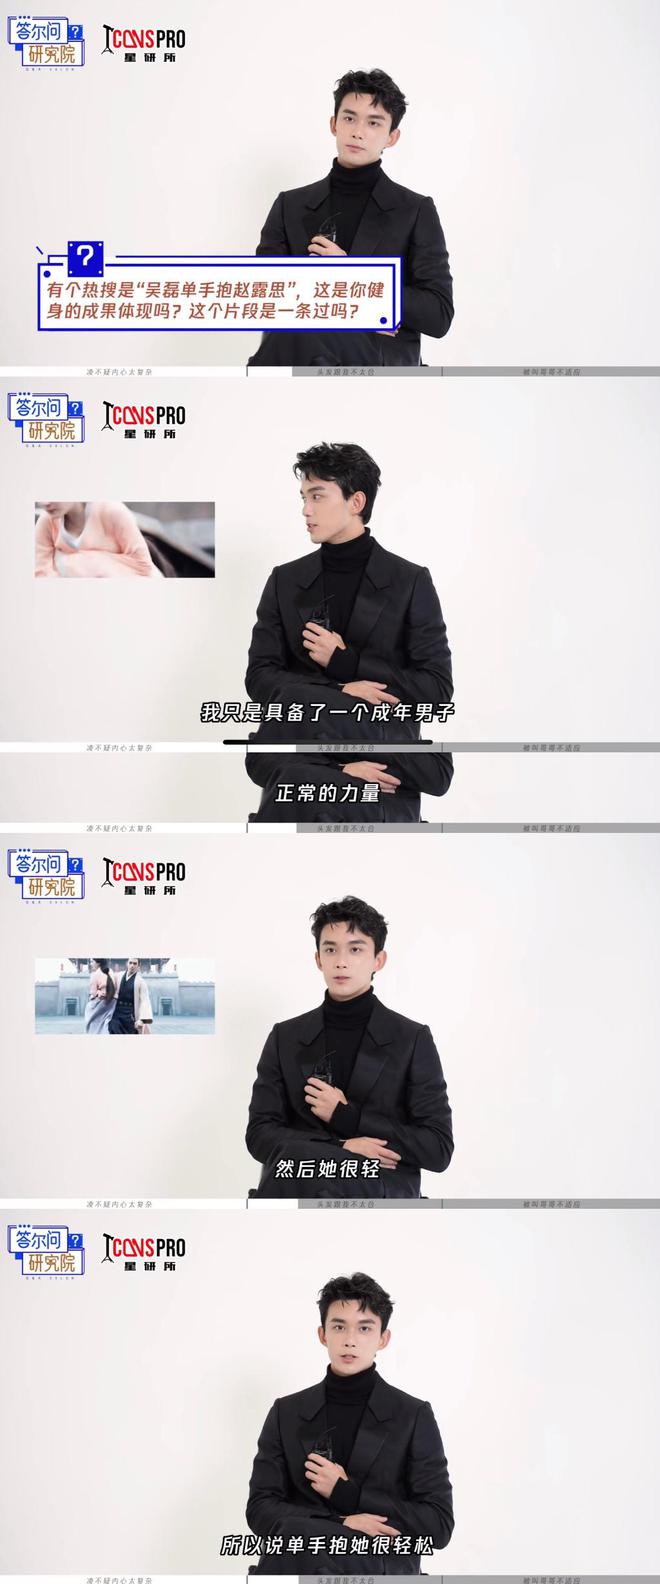 吴磊在采访中谈表演细节 称自己最近与头发不太合-